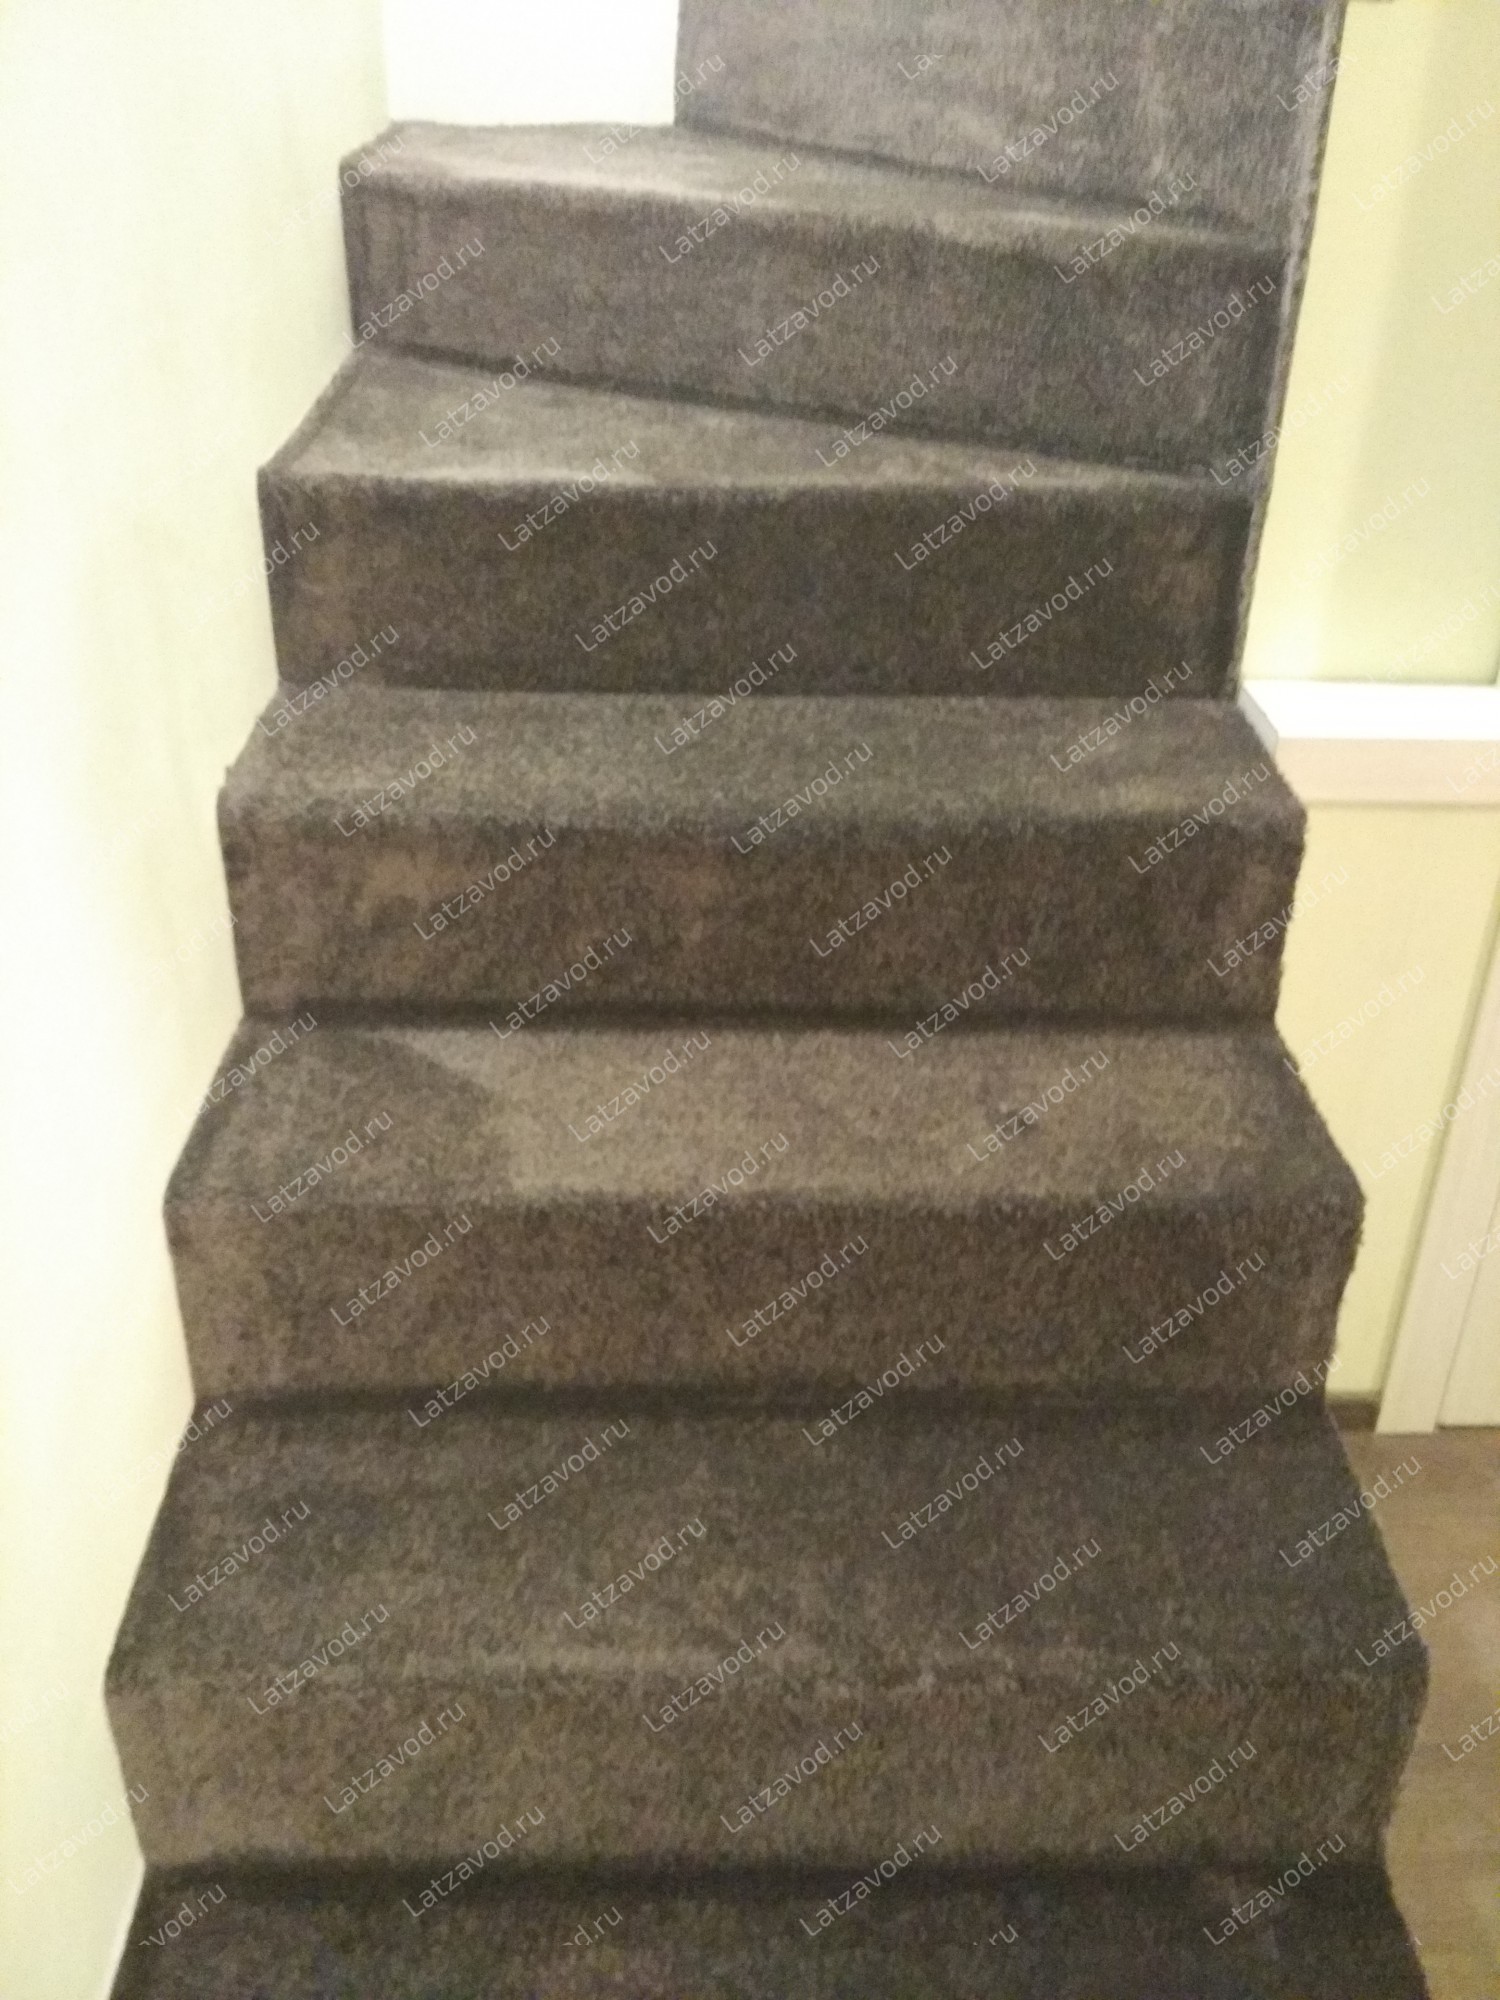 Купить ковролин на бетонную лестницу